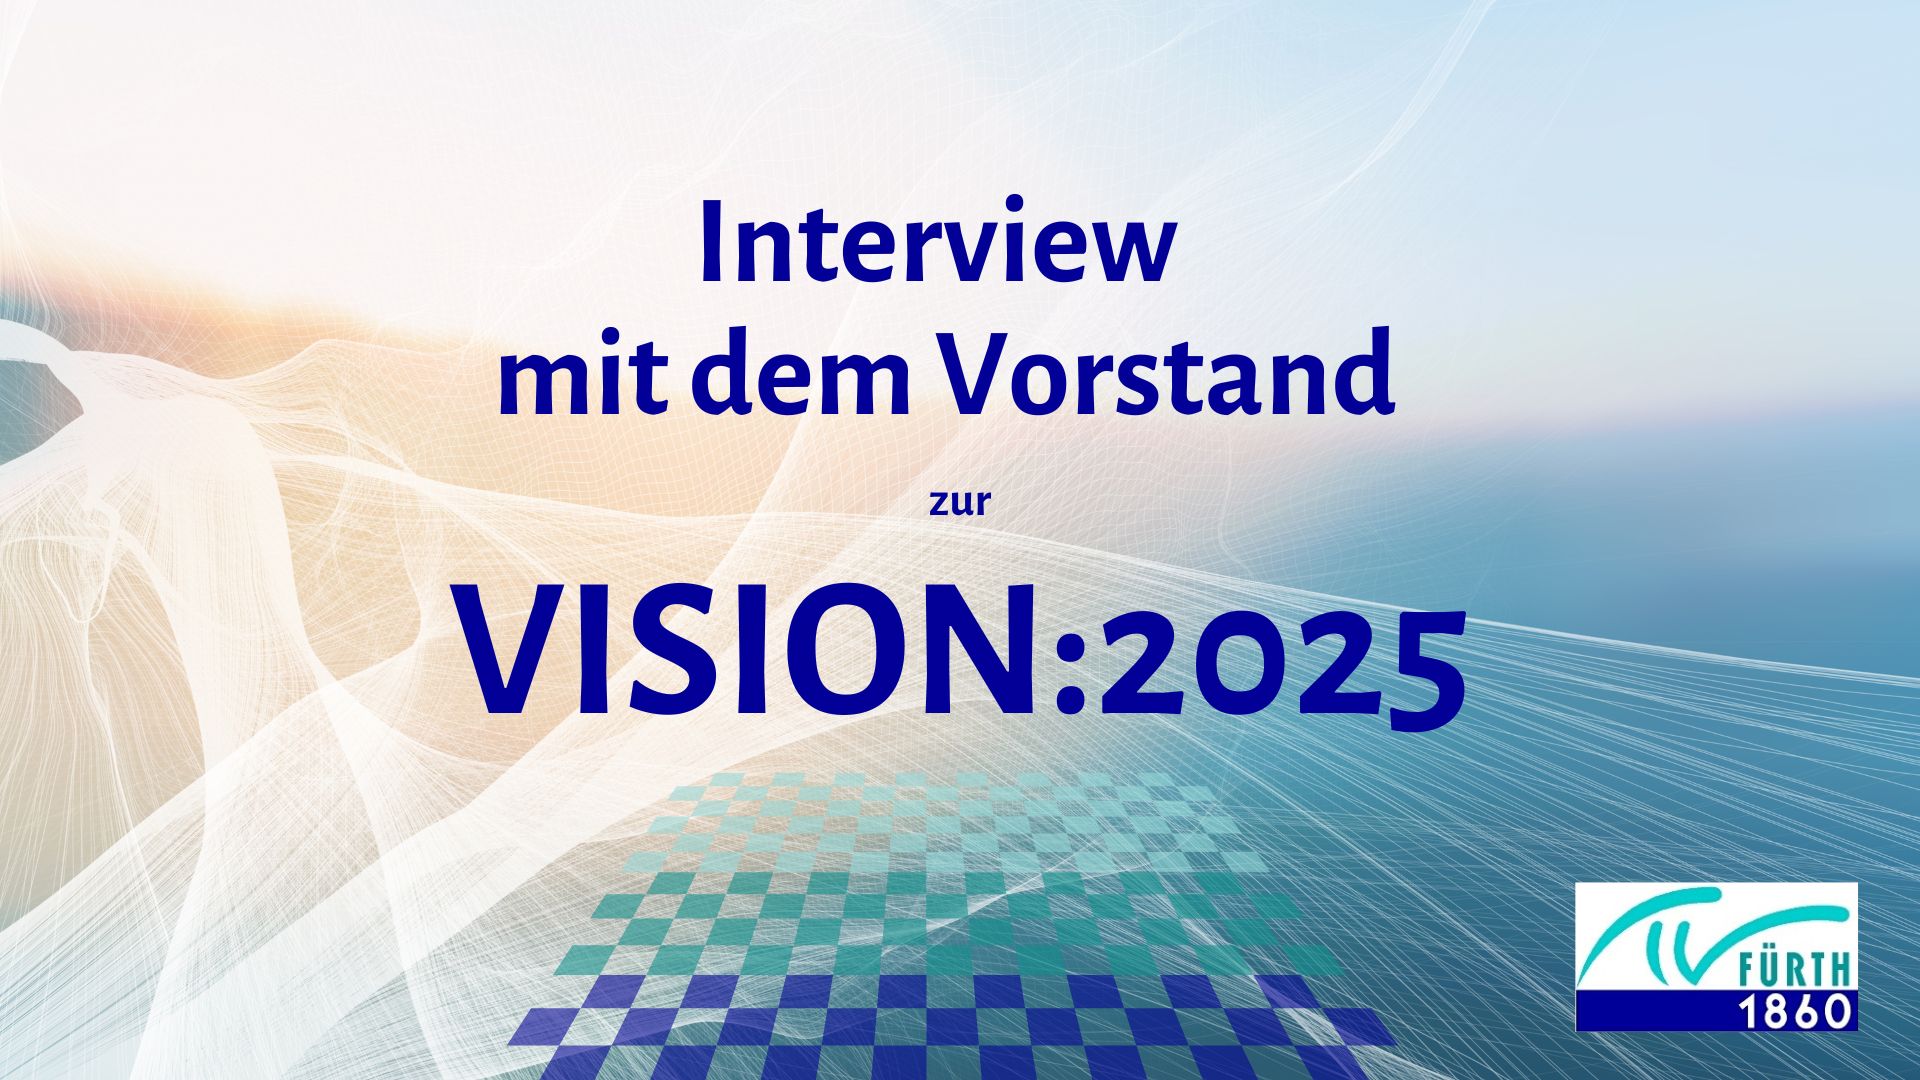 Vision:2025 - „Interview mit dem Vorstand“